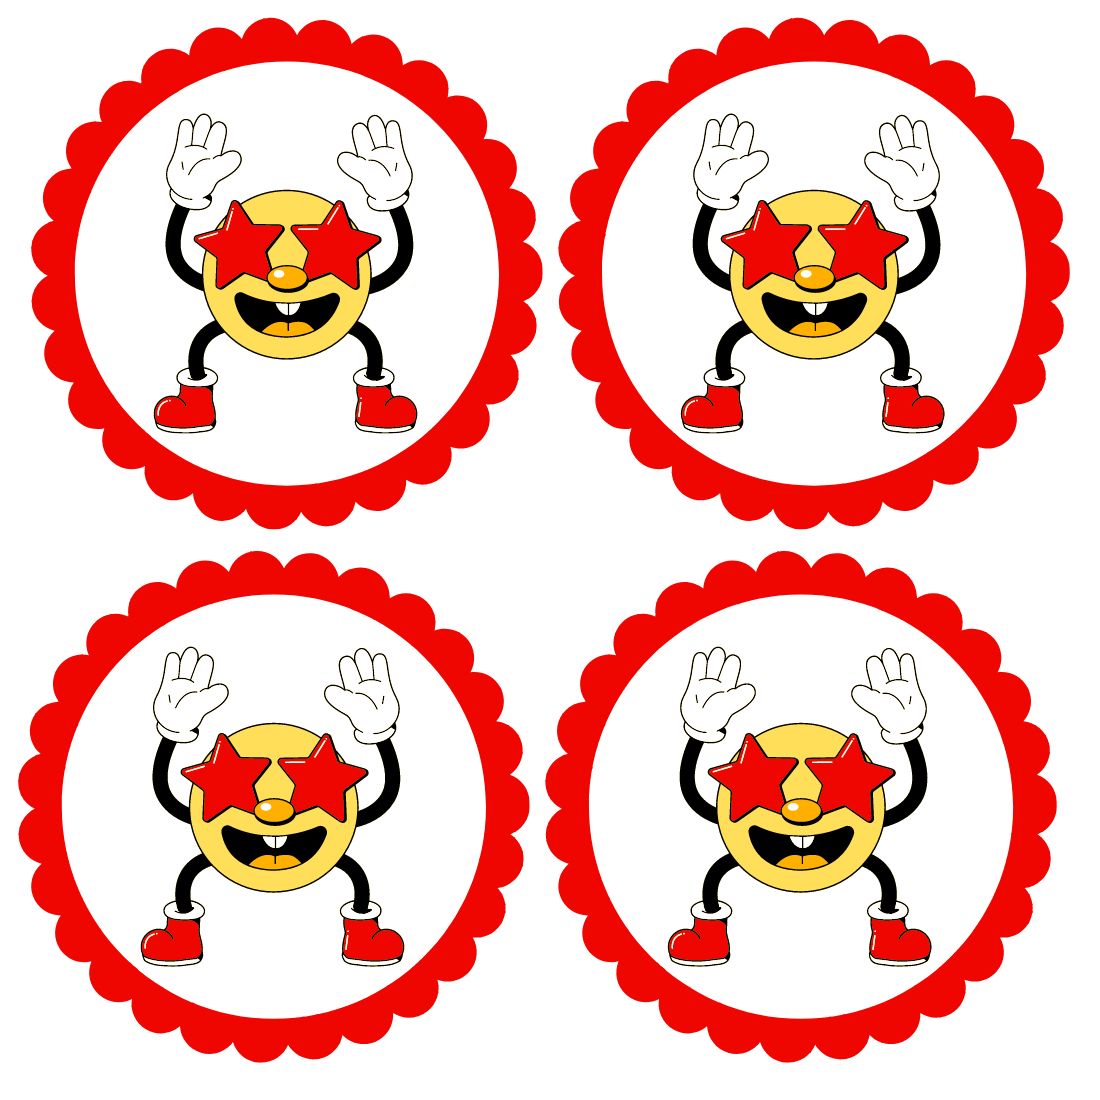 Happy emoji - Smiley Emoji Vector cover image.